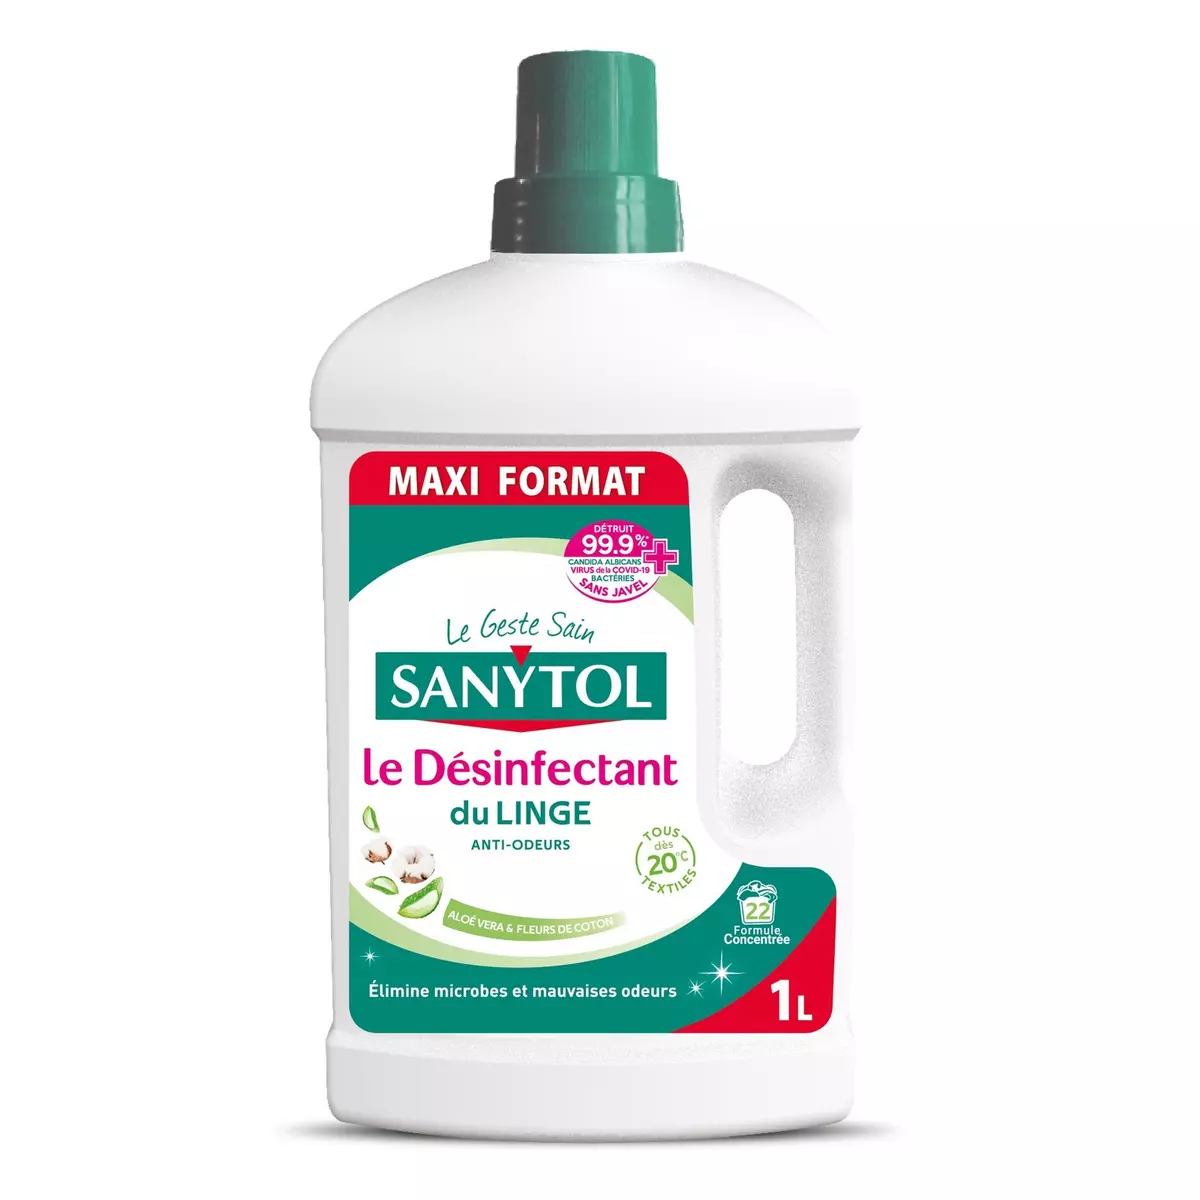 SANYTOL Désinfectant du linge anti-odeurs aloé vera et fleurs de coton Maxi format 1l